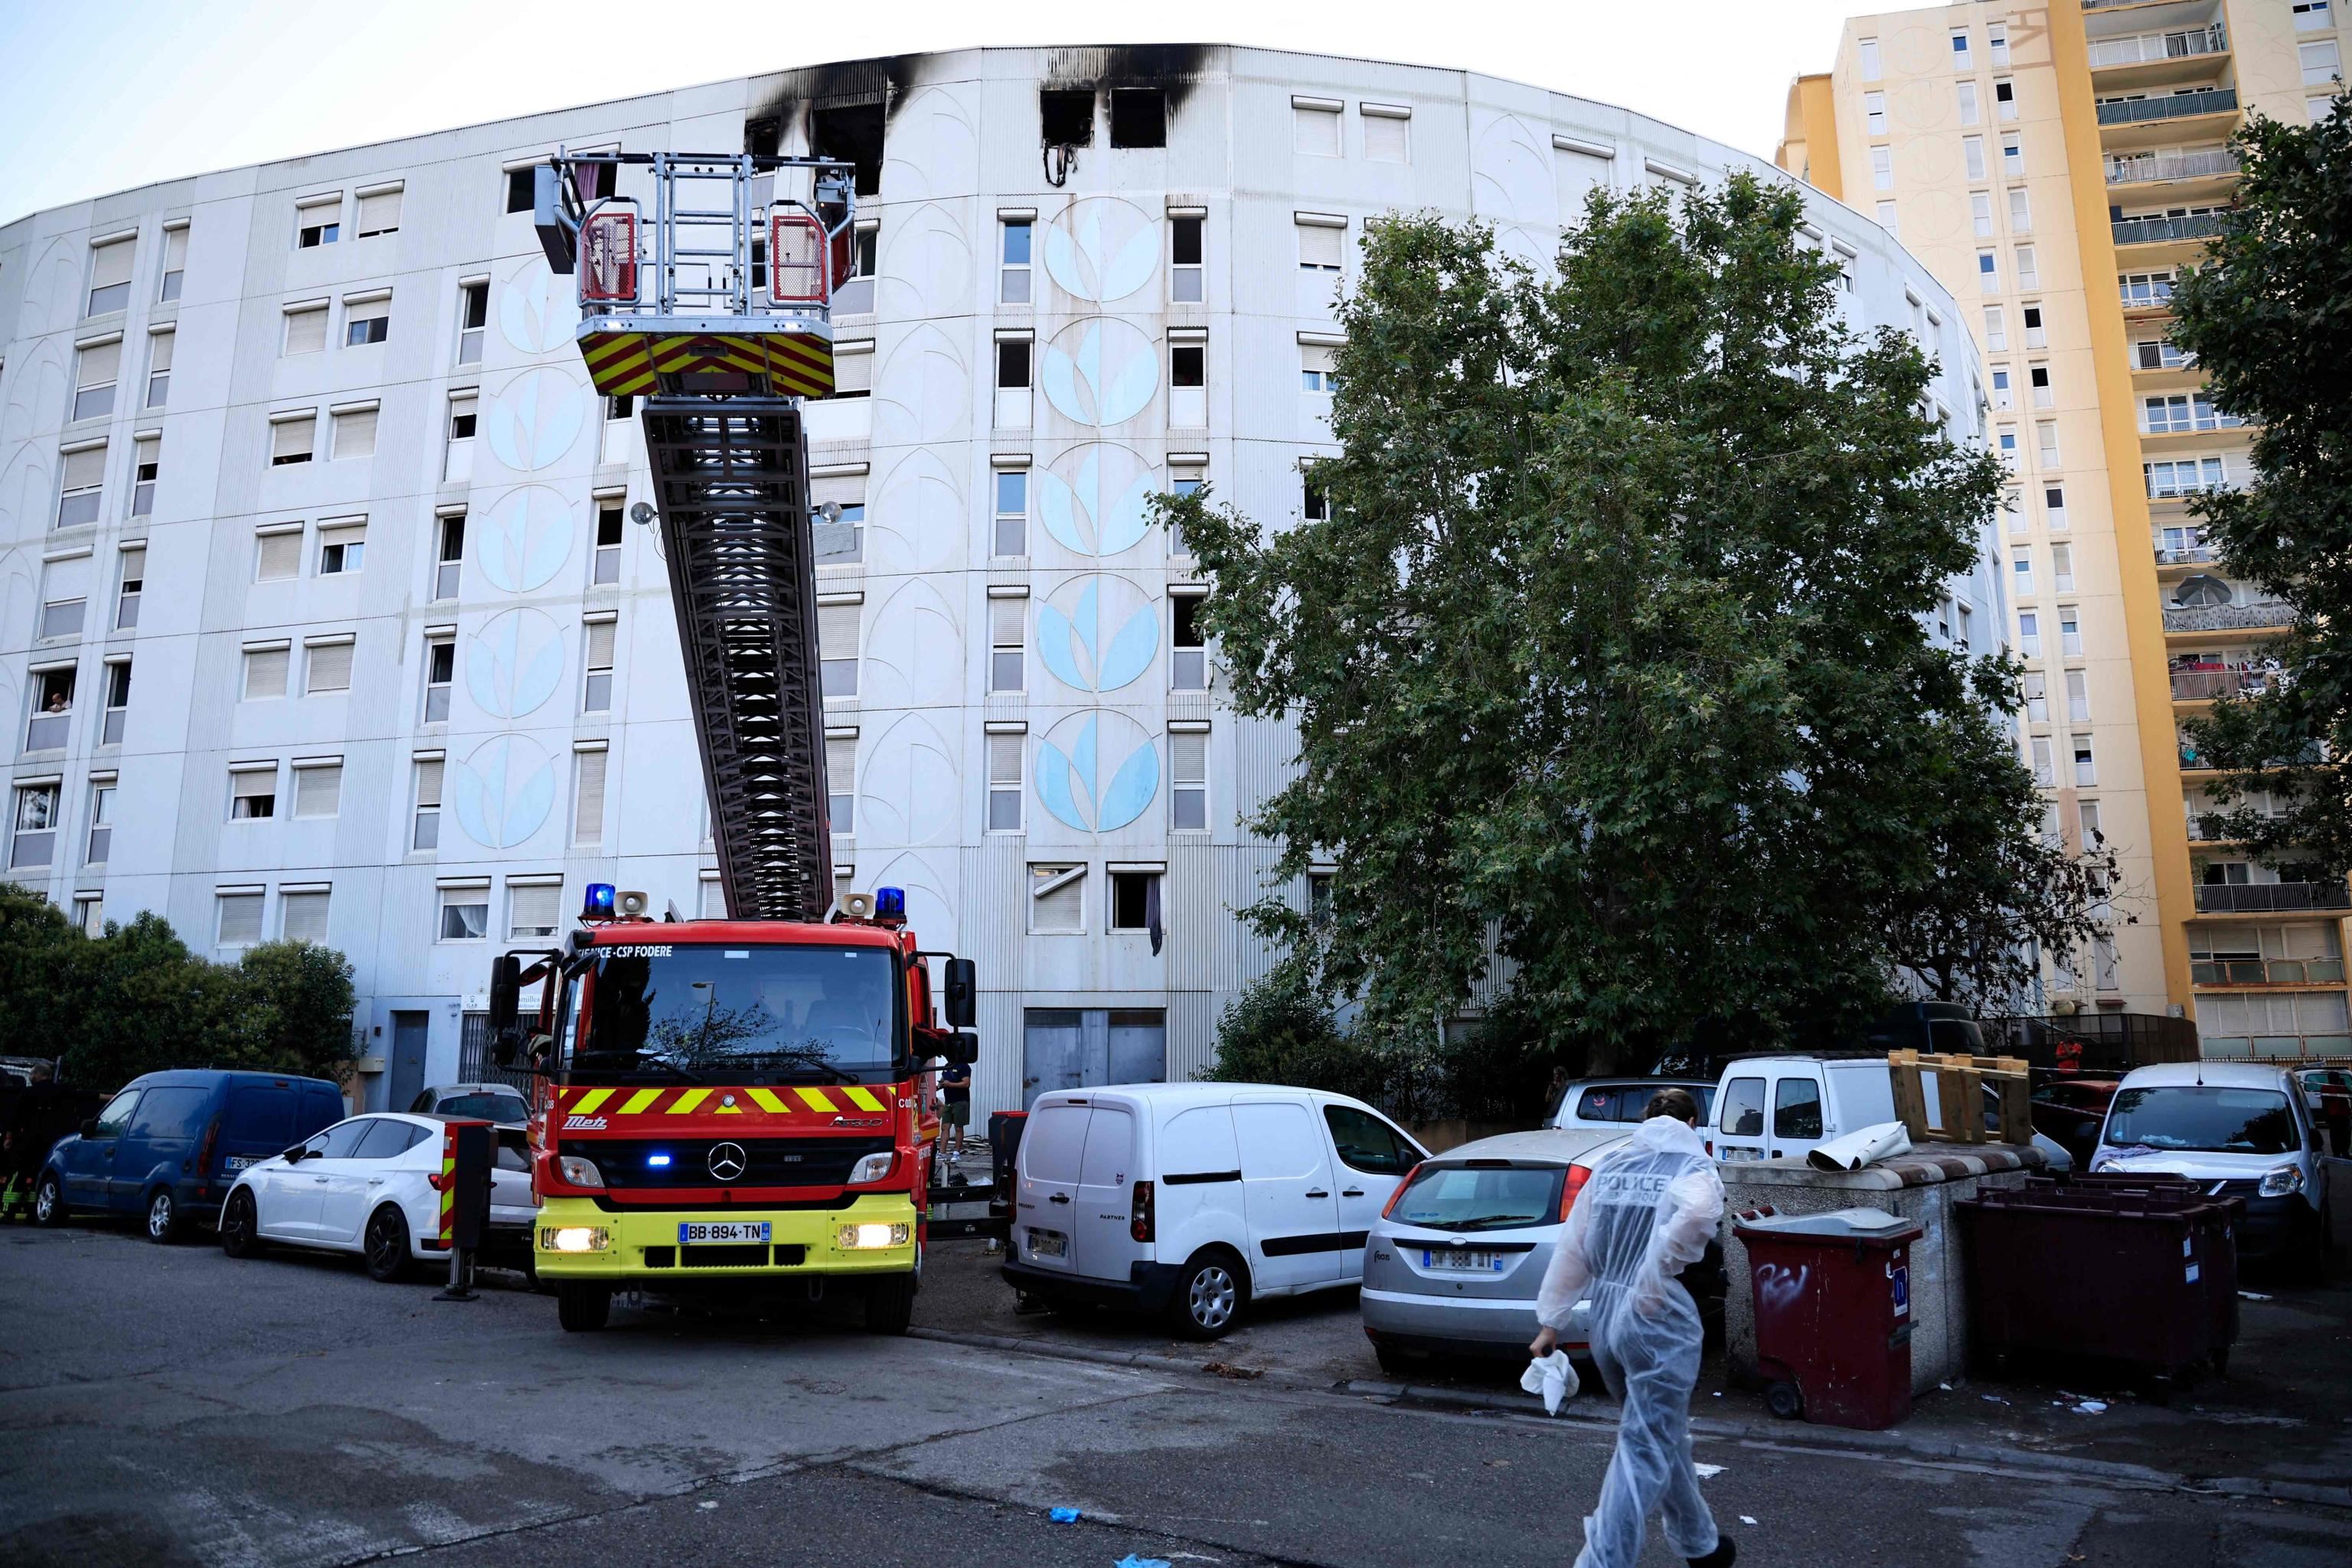 Il palazzo alla periferia di Nizza devastato dall'incendio di natura dolosa secondo gli inquirenti